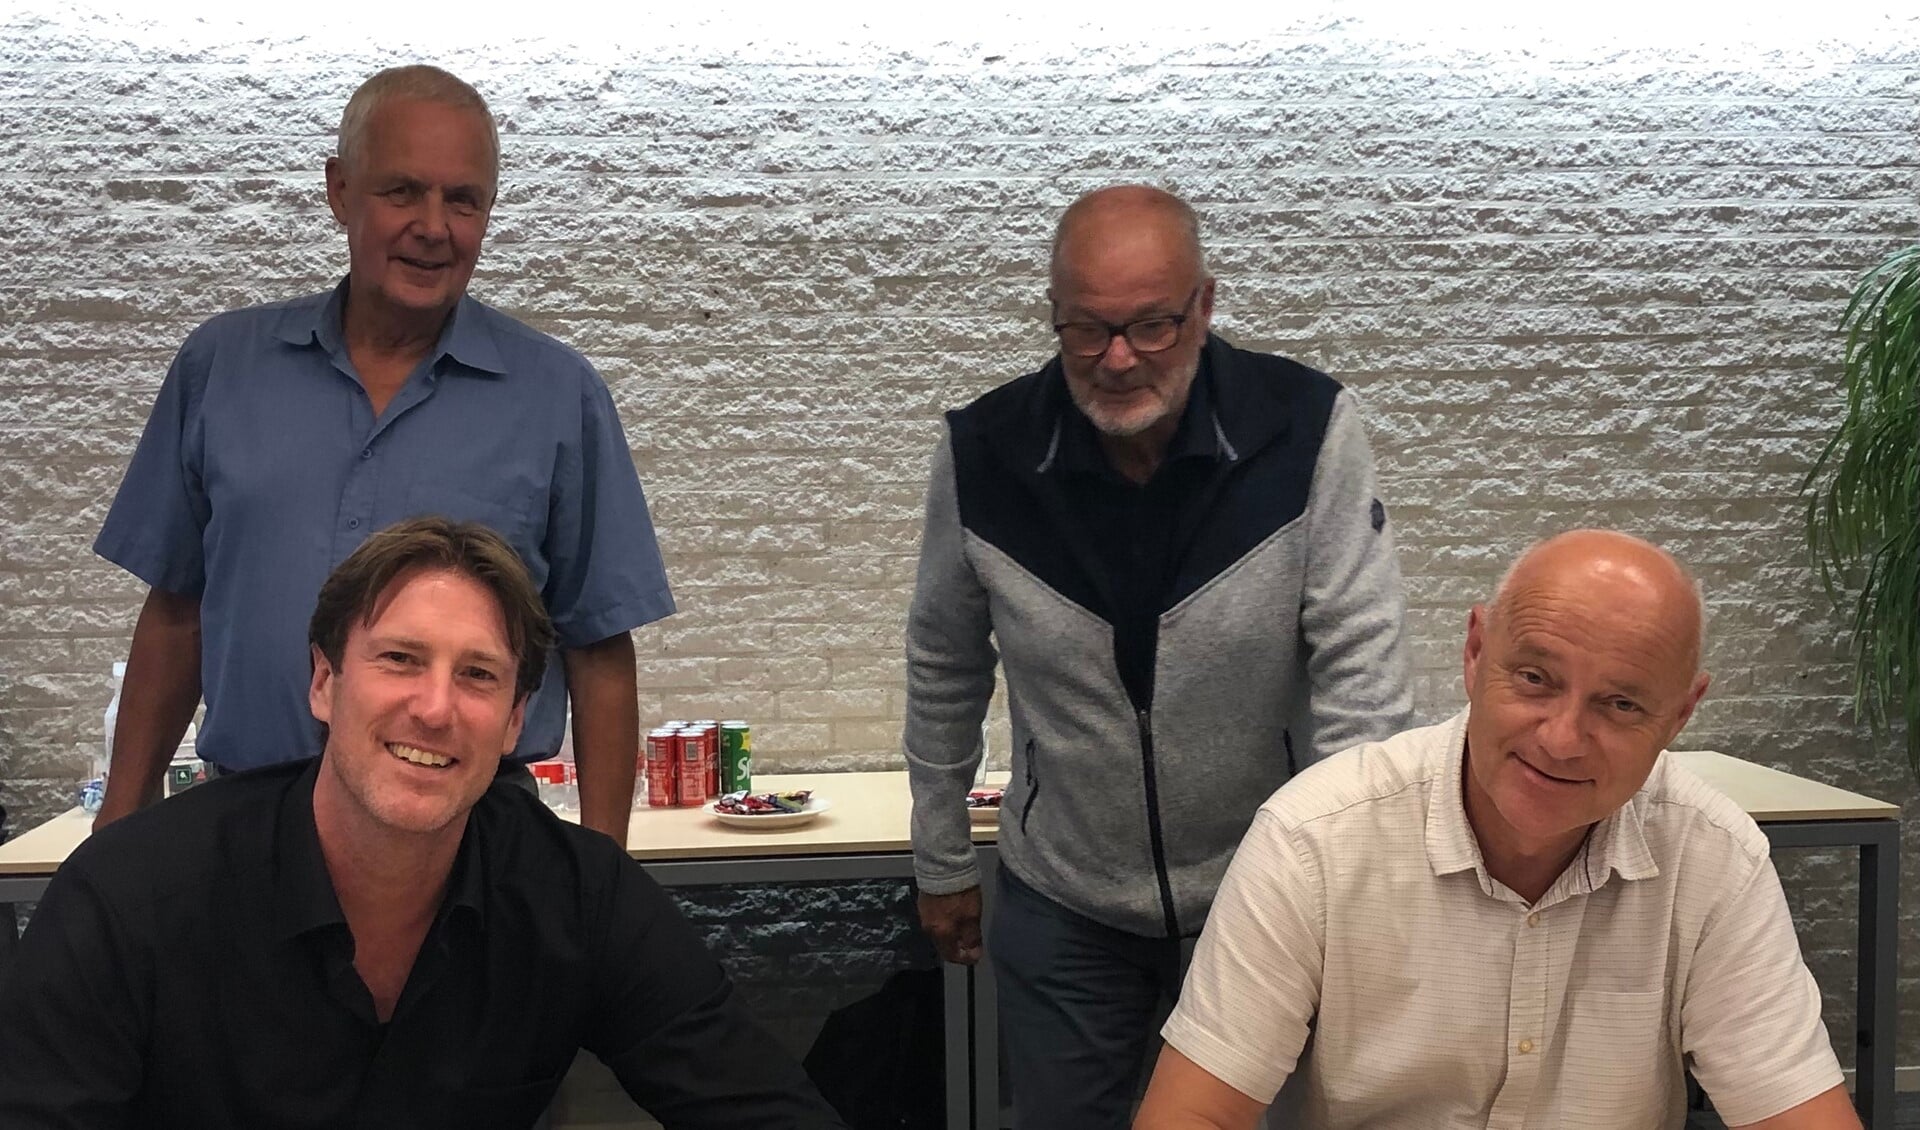 Prokind en VCPO bestuurders Menno van Riel en Maarten Groeneveld tekenen intentieverklaring met op de achtergrond toezichthouders Joost Mayer en Ton Scheffers.